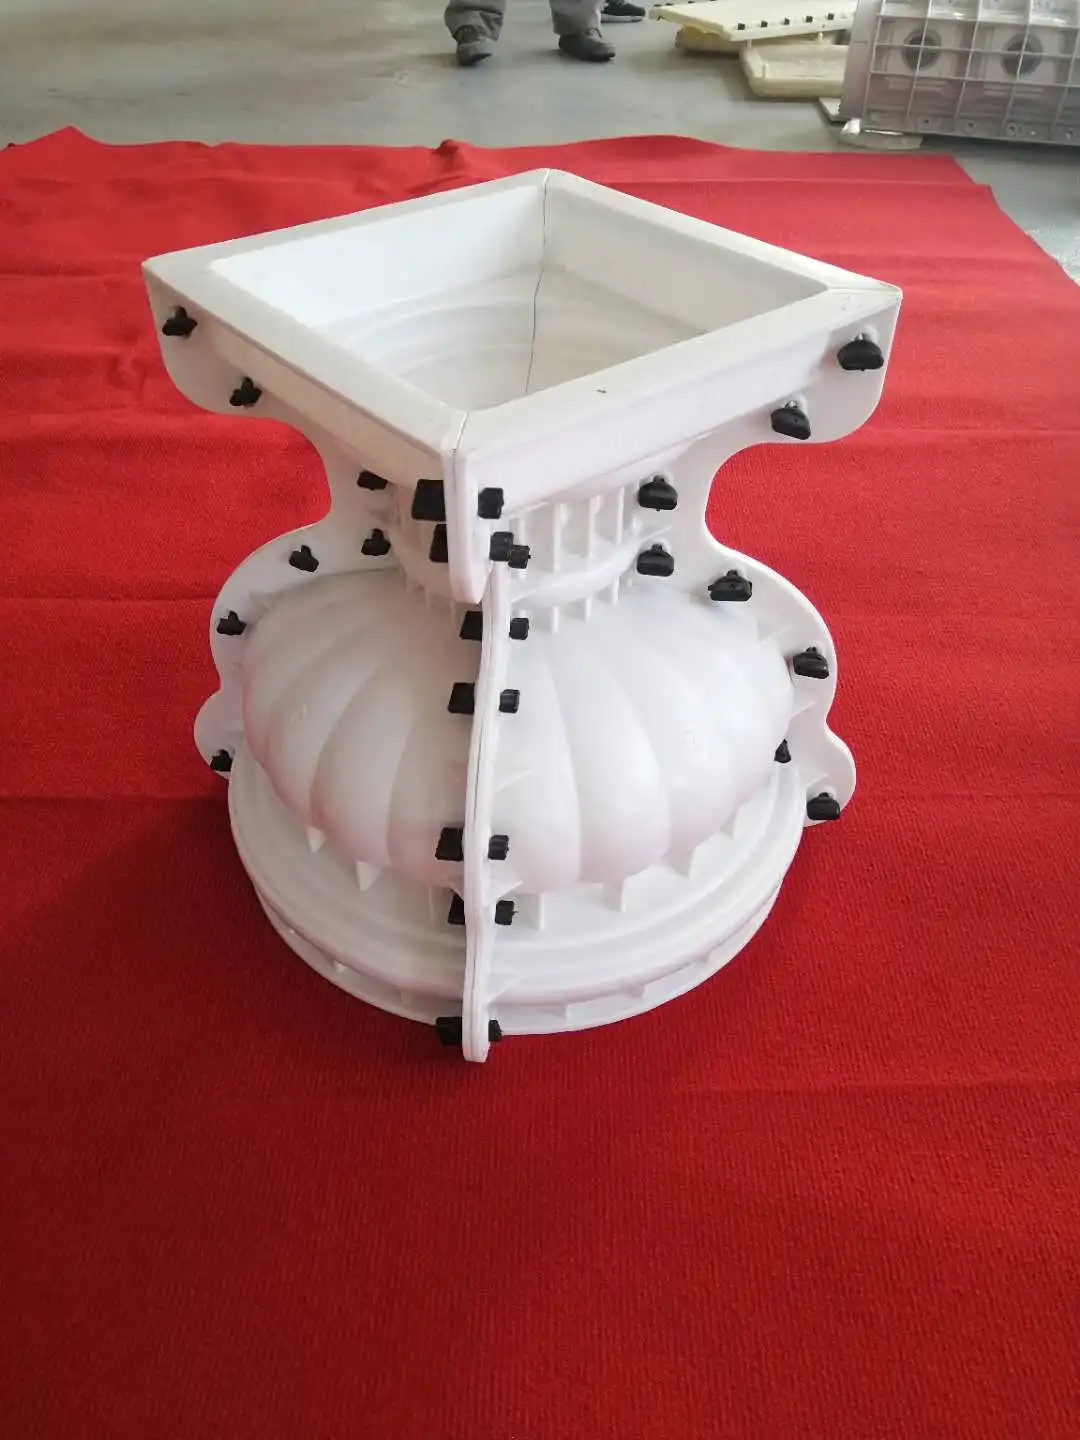 Reazone ABS High Quality Diameter 45cm Plastic Precast Concrete Flower Pot Planter Molds for Sale images - 6